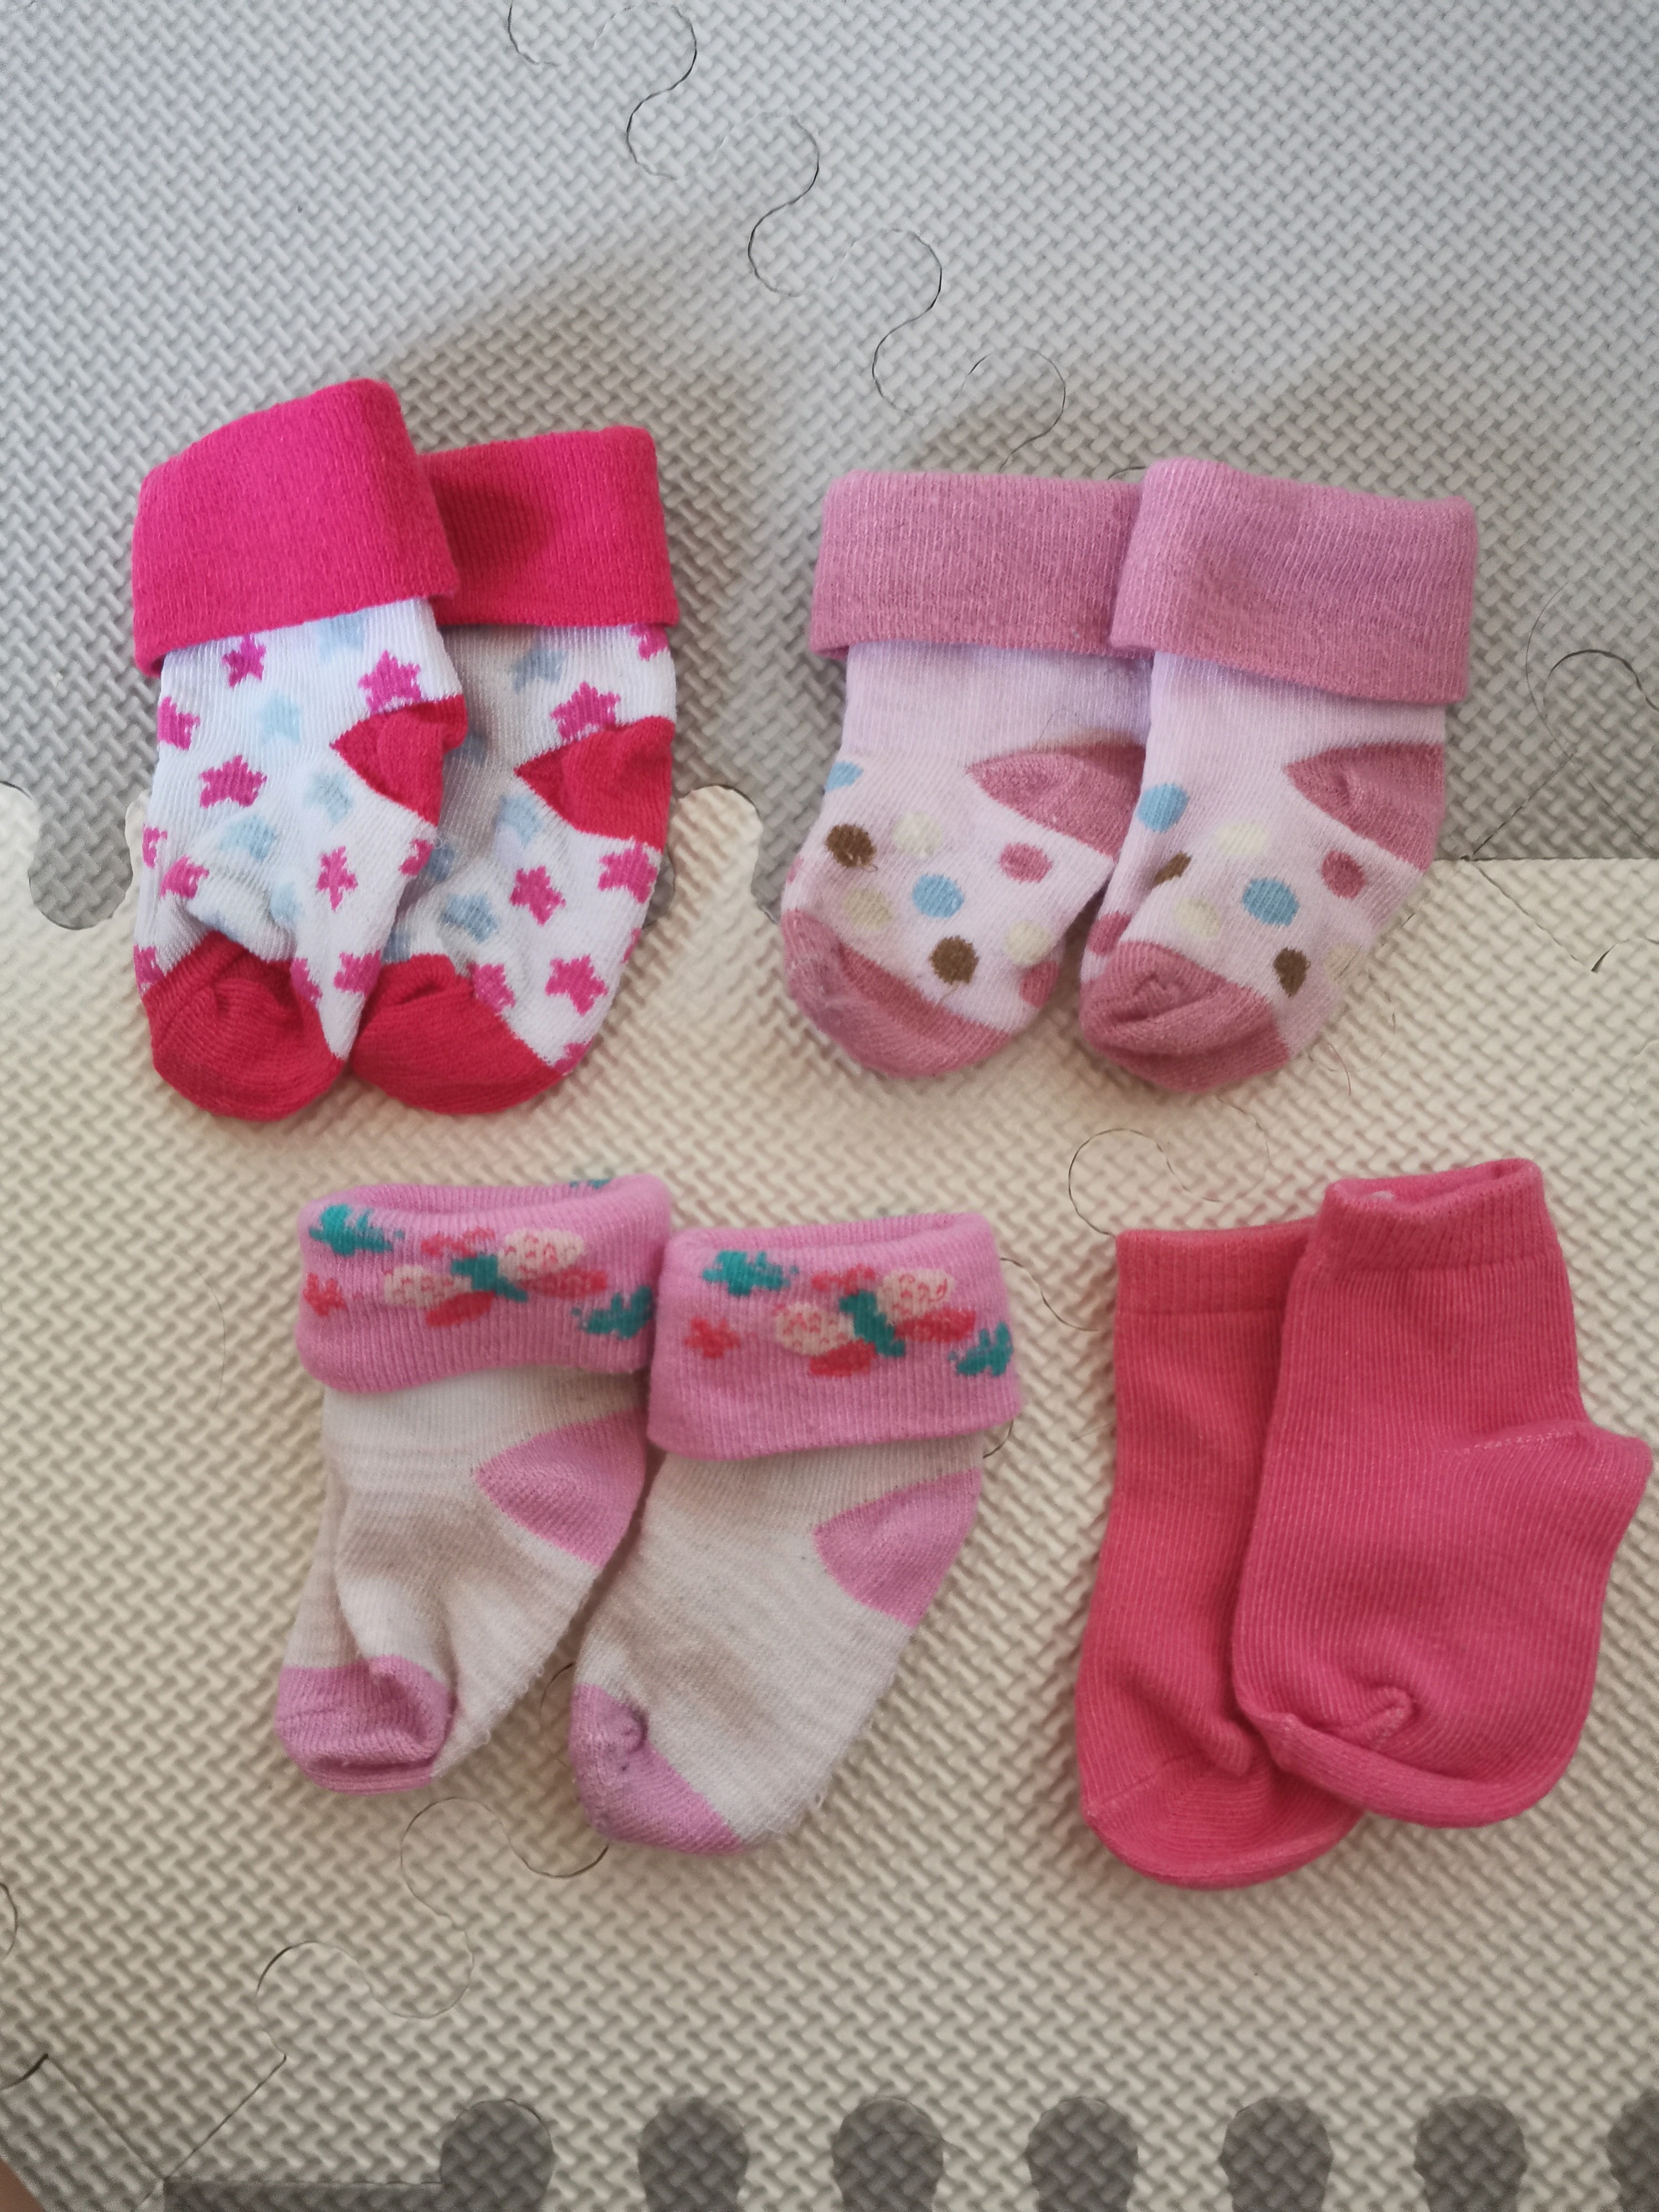 newborn socks